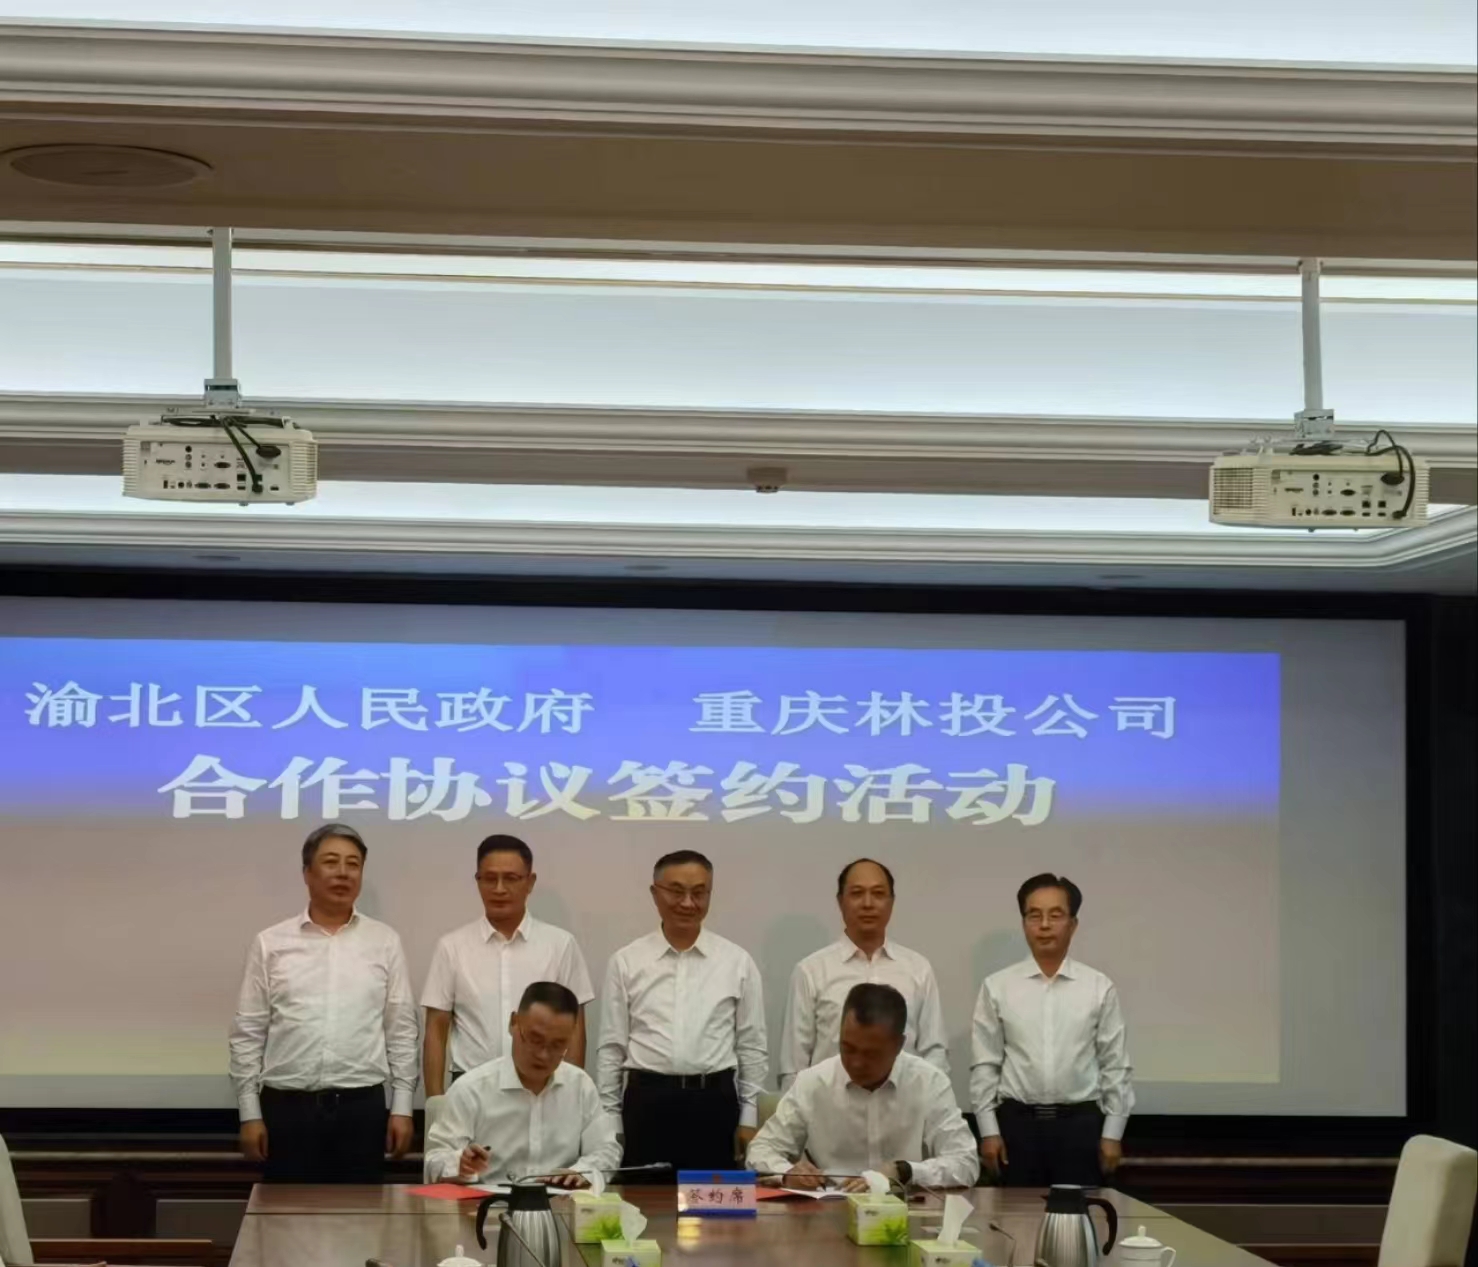 重庆林投公司与渝北区签订国家储备林建设合作协议